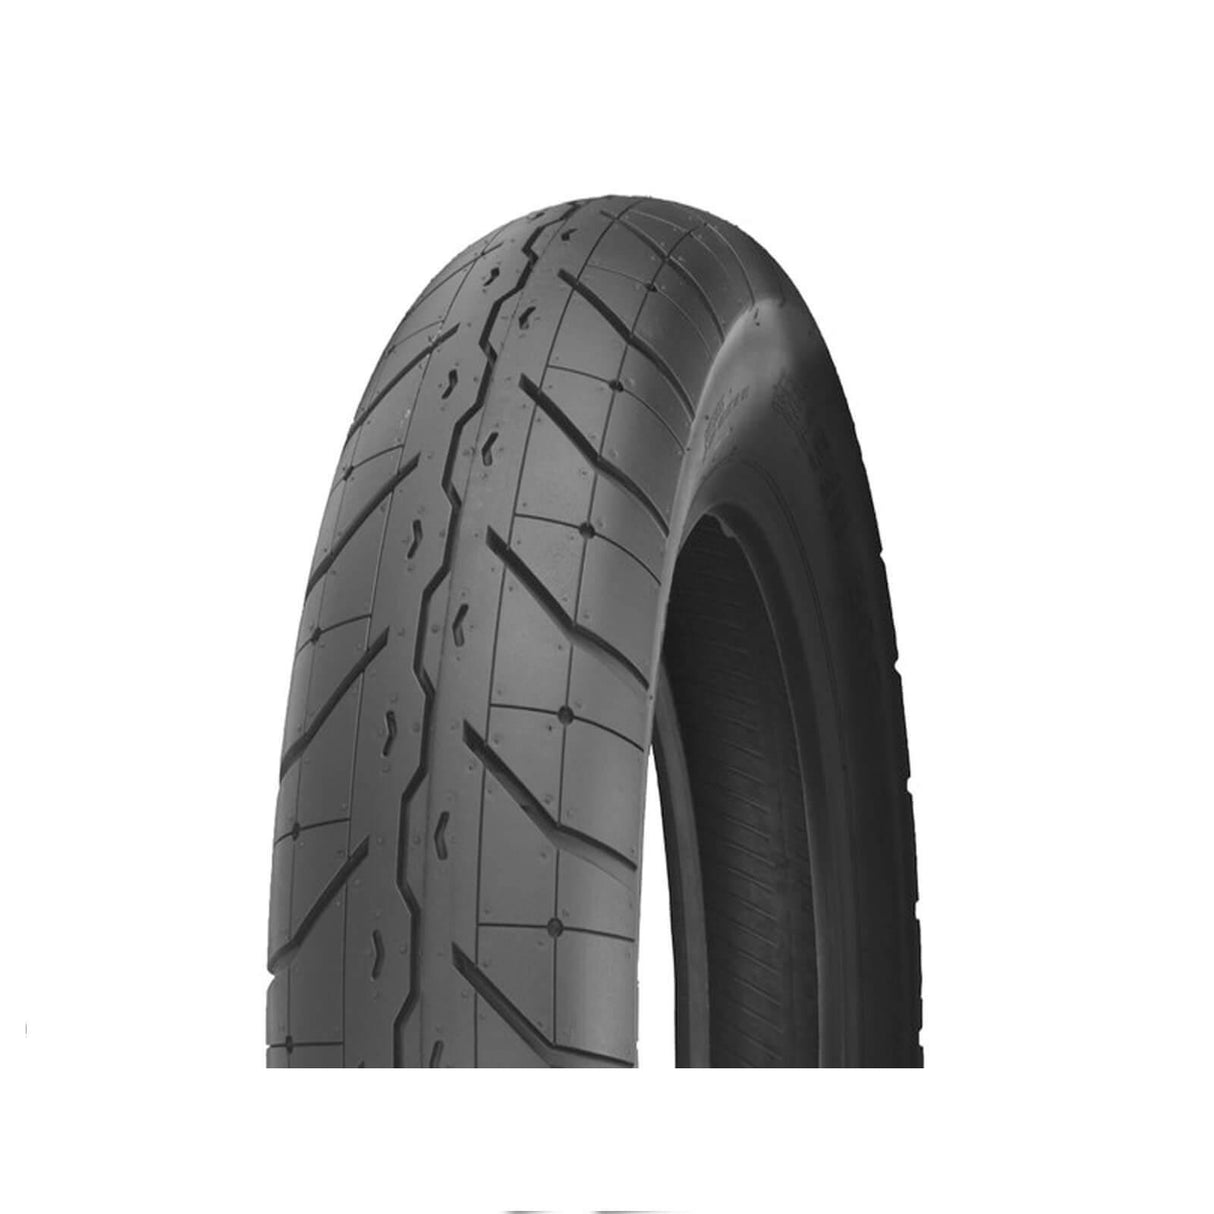 100/90-19 F230 Tour Master Shinko Front Tyre